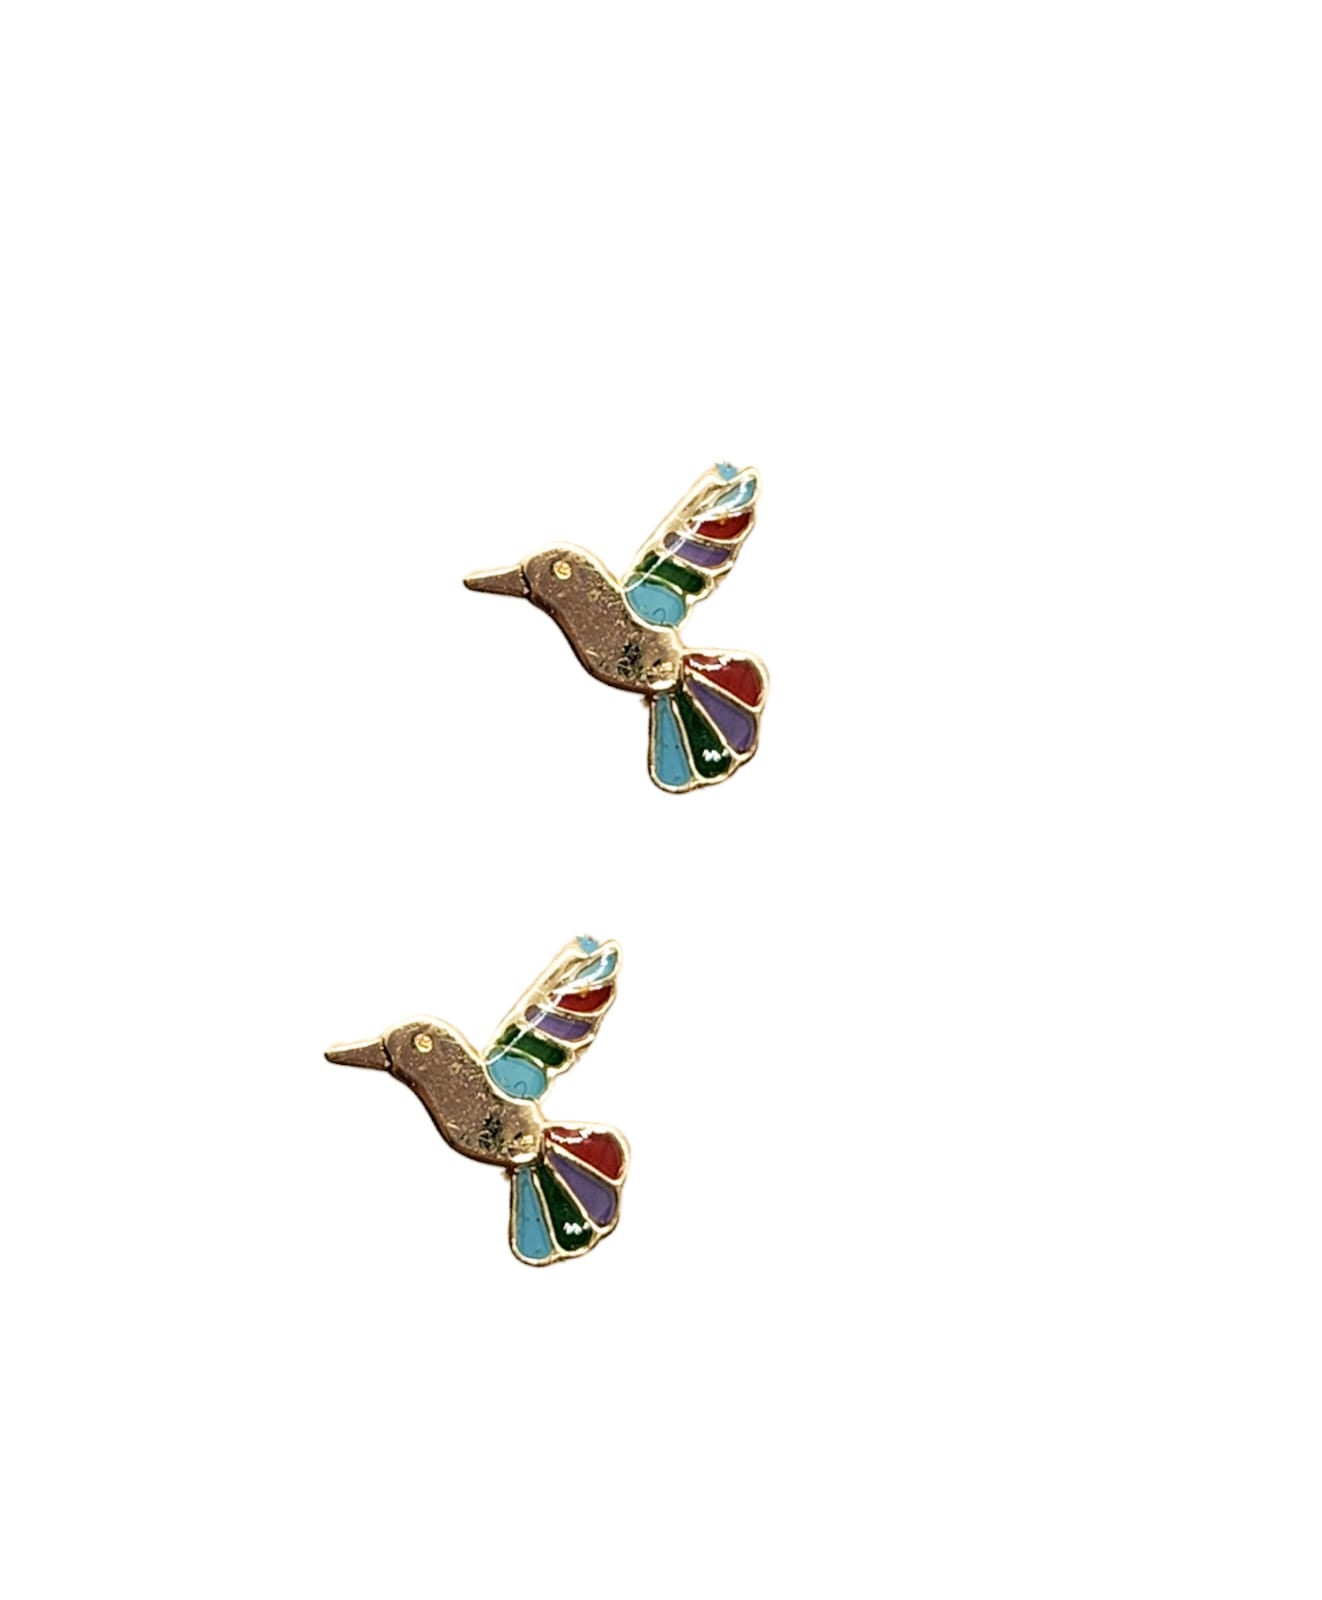 Broquel colibrí esmalte oro 10k DORADO